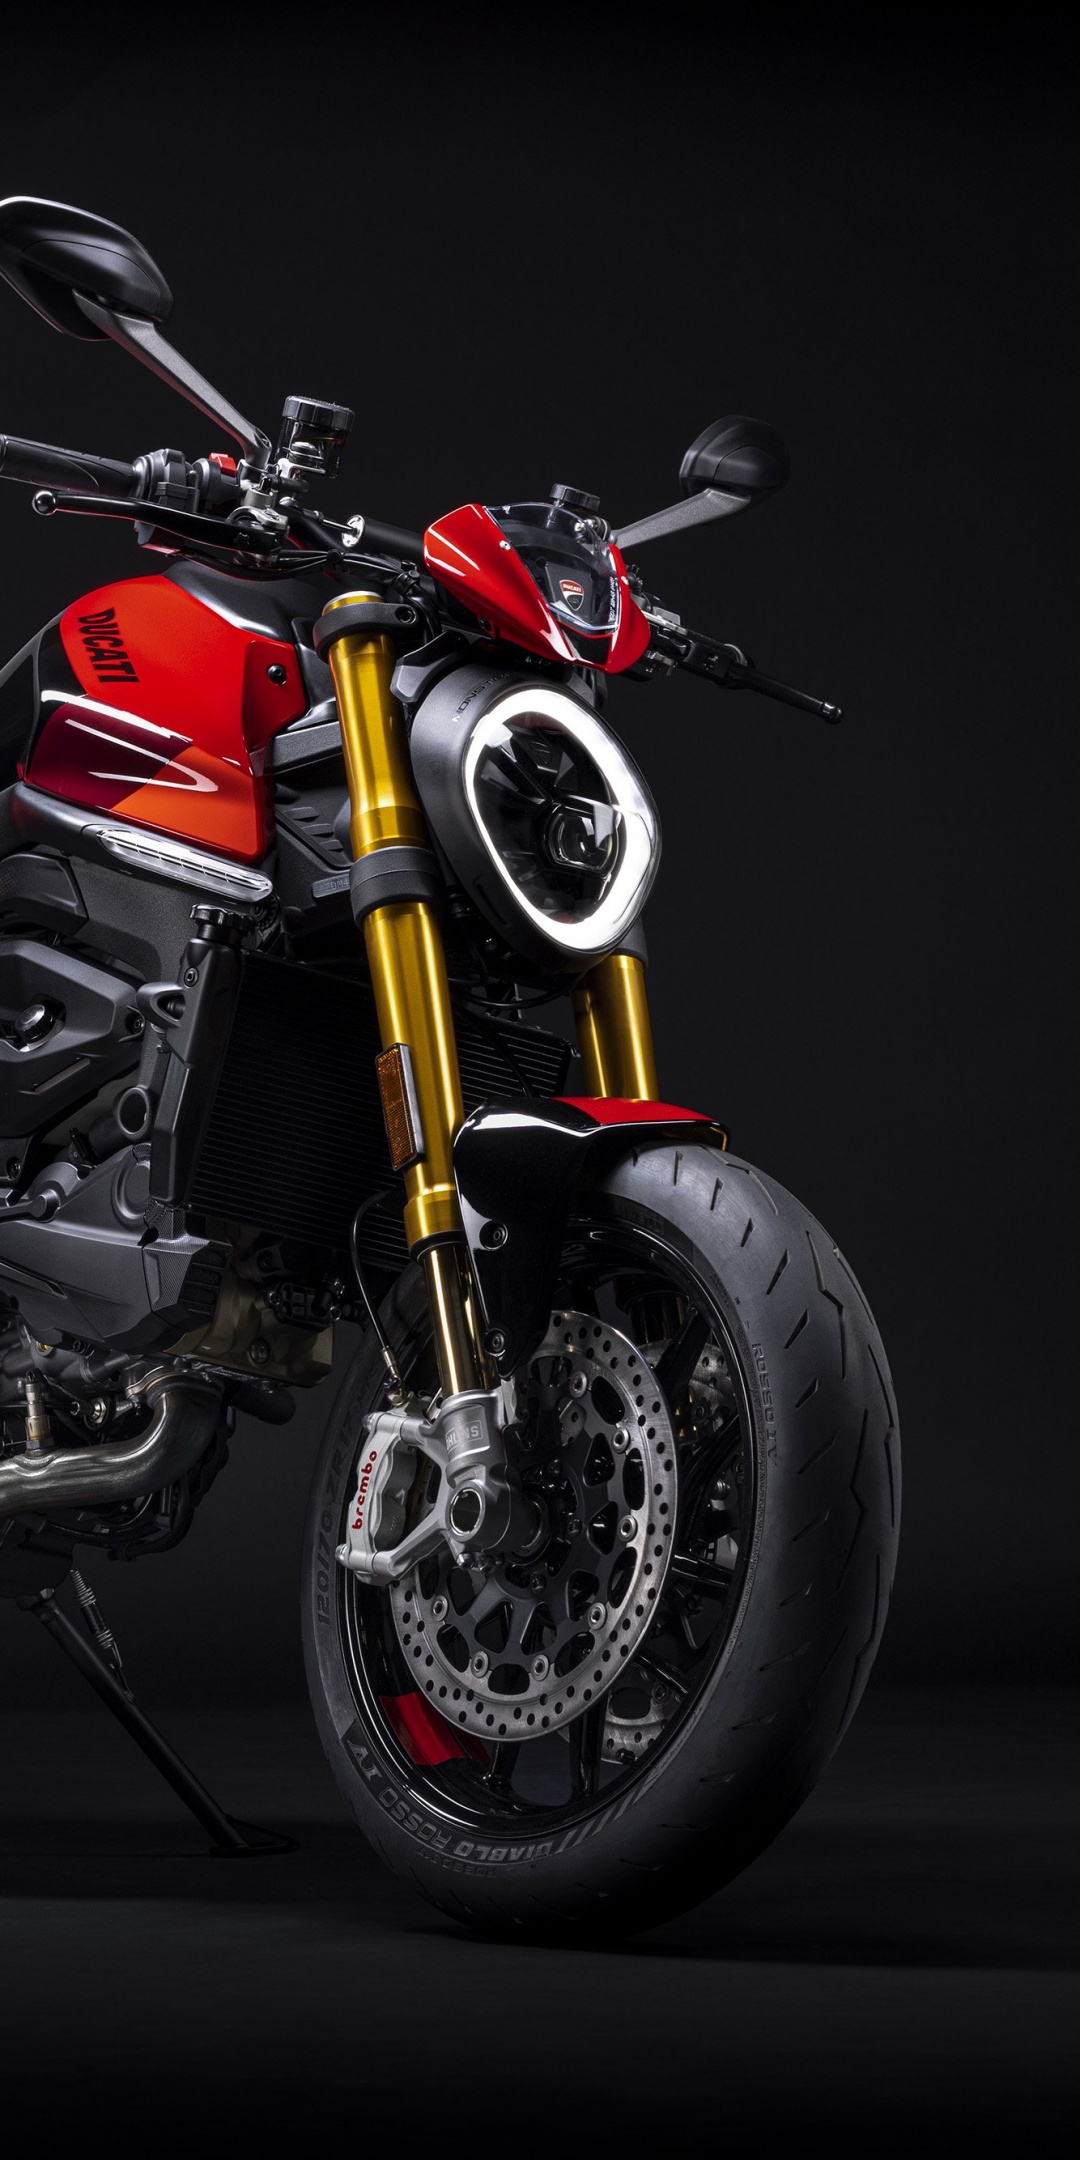 Xe máy Ducati Monster SP: Xế hộp không chỉ là một phương tiện đi lại thông thường mà còn là niềm đam mê của rất nhiều người. Hãy cùng khám phá với những hình ảnh về chiếc xe lý tưởng cho những người đam mê độ xe- Ducati Monster SP. Đây sẽ là món quà đặc biệt dành cho những ai đam mê tốc độ!